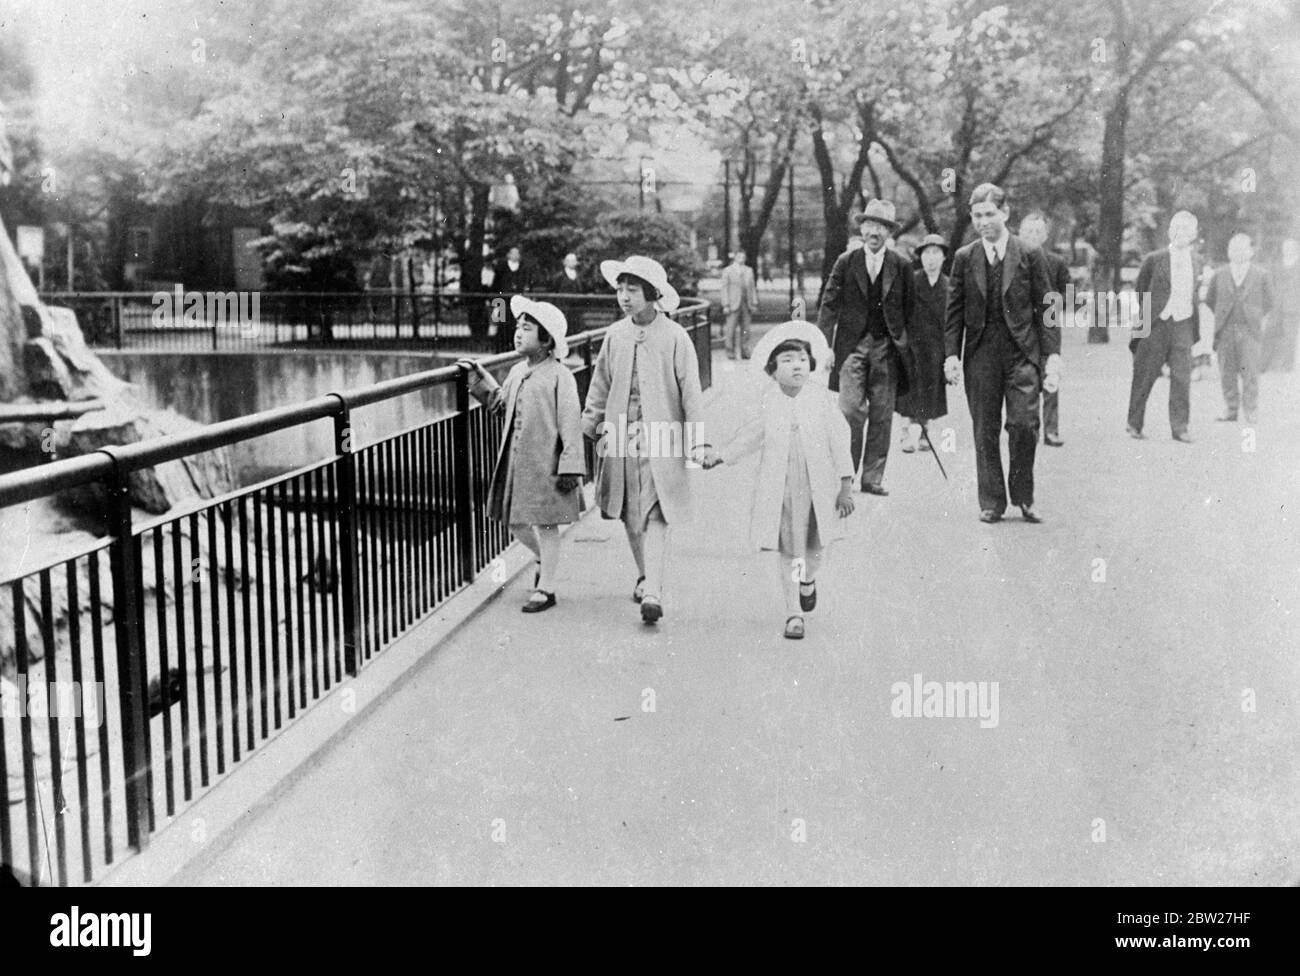 Les princesses japonaises visitent un zoo. La princesse Yori [Atsuko Ikeda] (à droite), la princesse Teru [Shigeko Higashikuni] et la princesse Taka [Kazuko Takatsukasa], filles de l'empereur japonais [Hirohito, empereur Showa], [sœurs du futur empereur Akihito], ont visité le zoo d'Ueno à Tokyo en compagnie du réalisateur M. Michiku. 9 juillet 1937 Banque D'Images